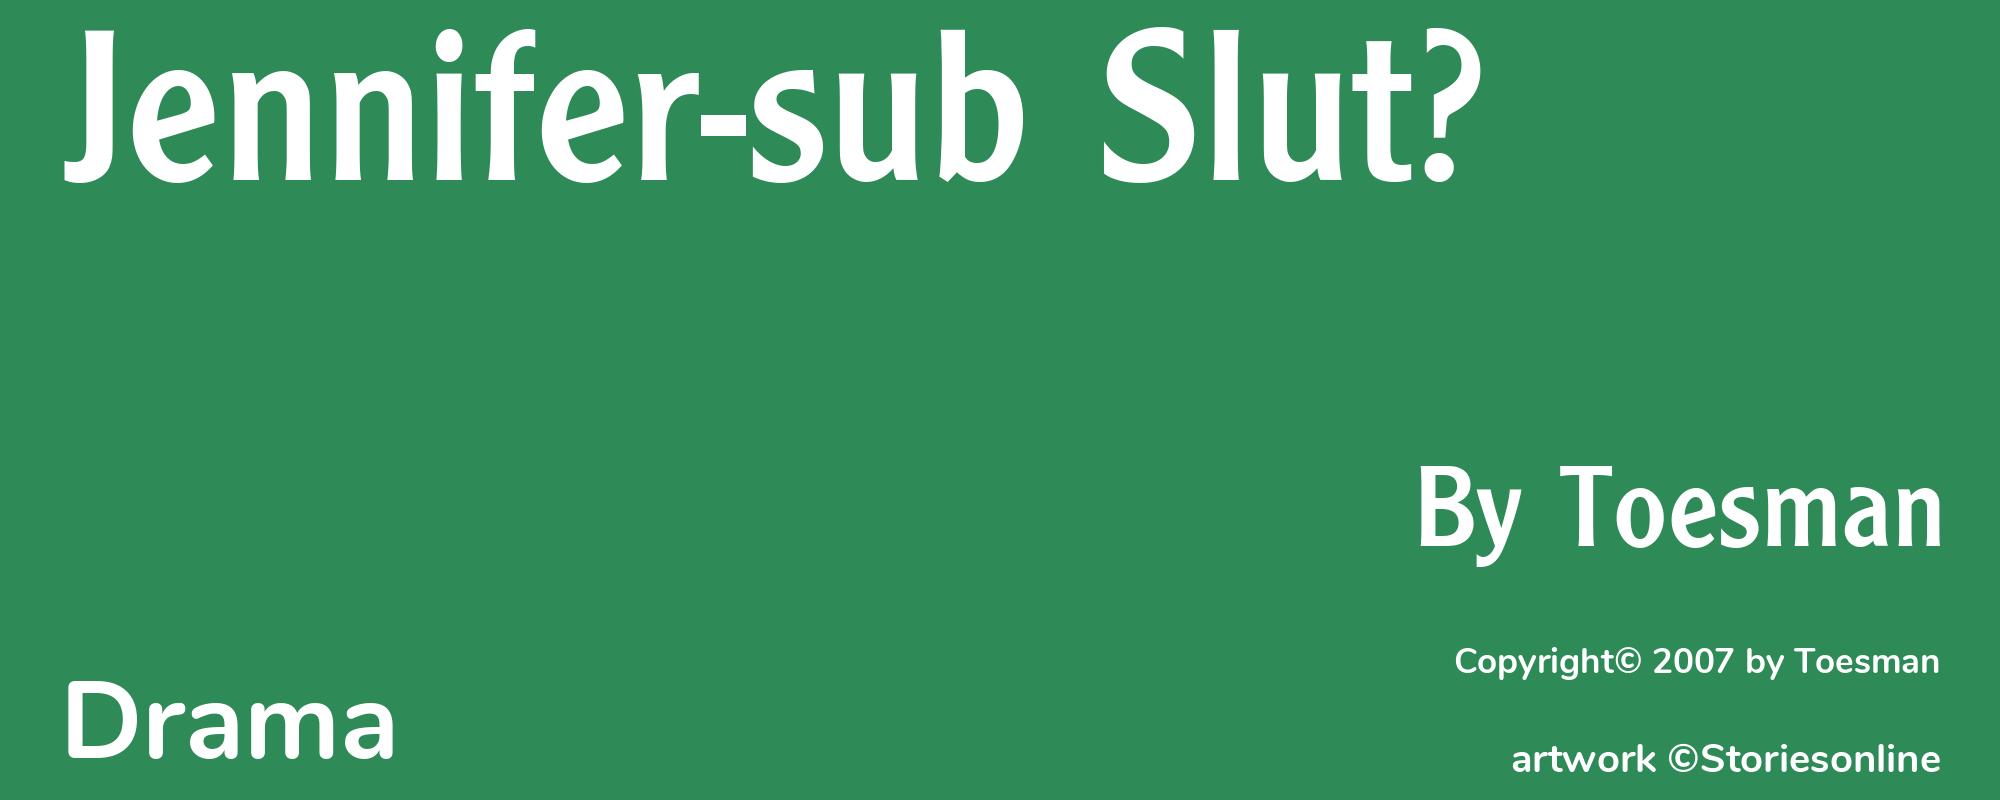 Jennifer-sub Slut? - Cover